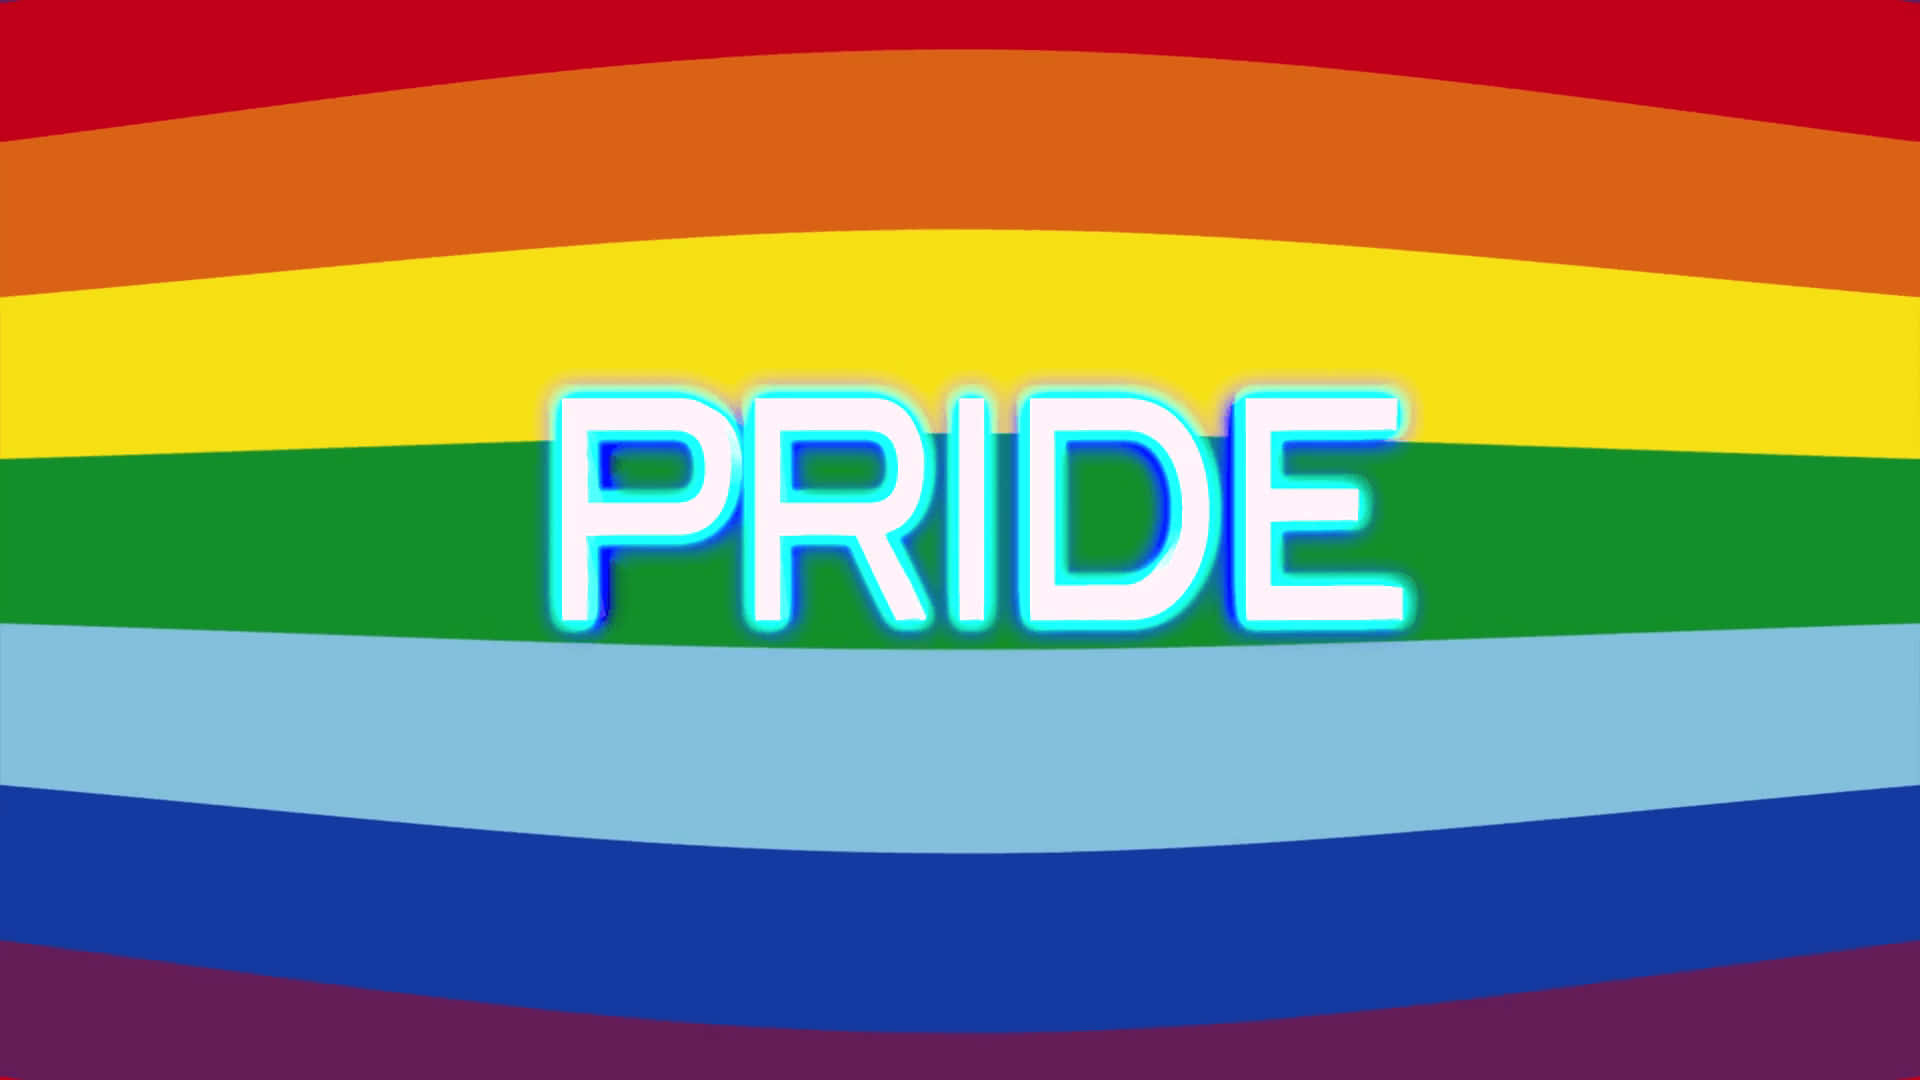 Pride - Lgbt Pride - Pride - Pride - Pride - Pride - Pride - Pride - Pride -